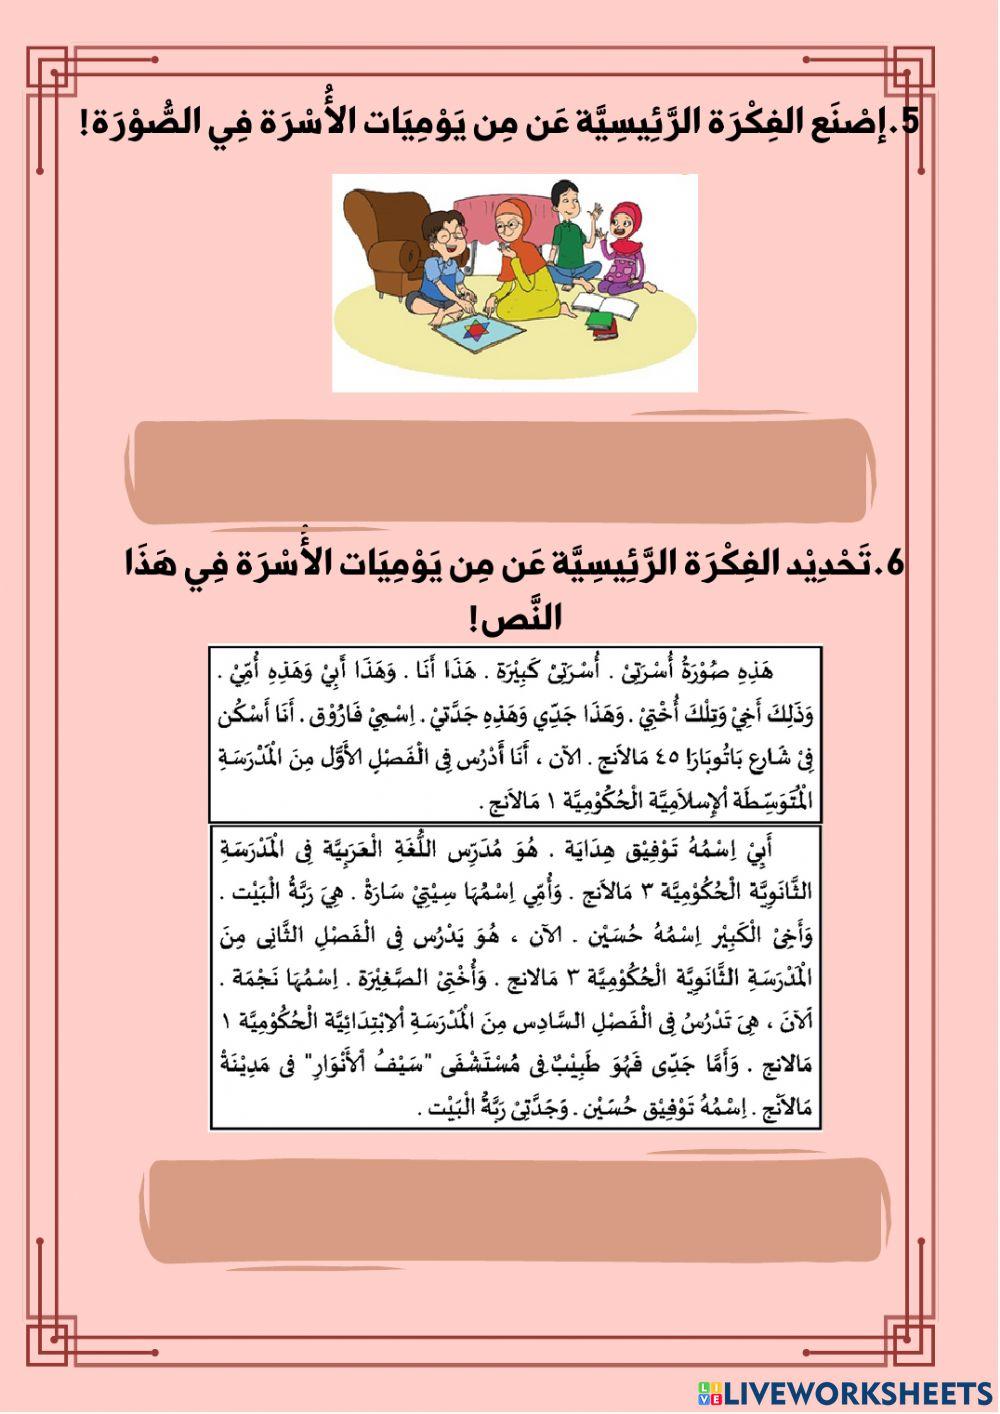 Assemen membaca tentang aktivitas keluarga